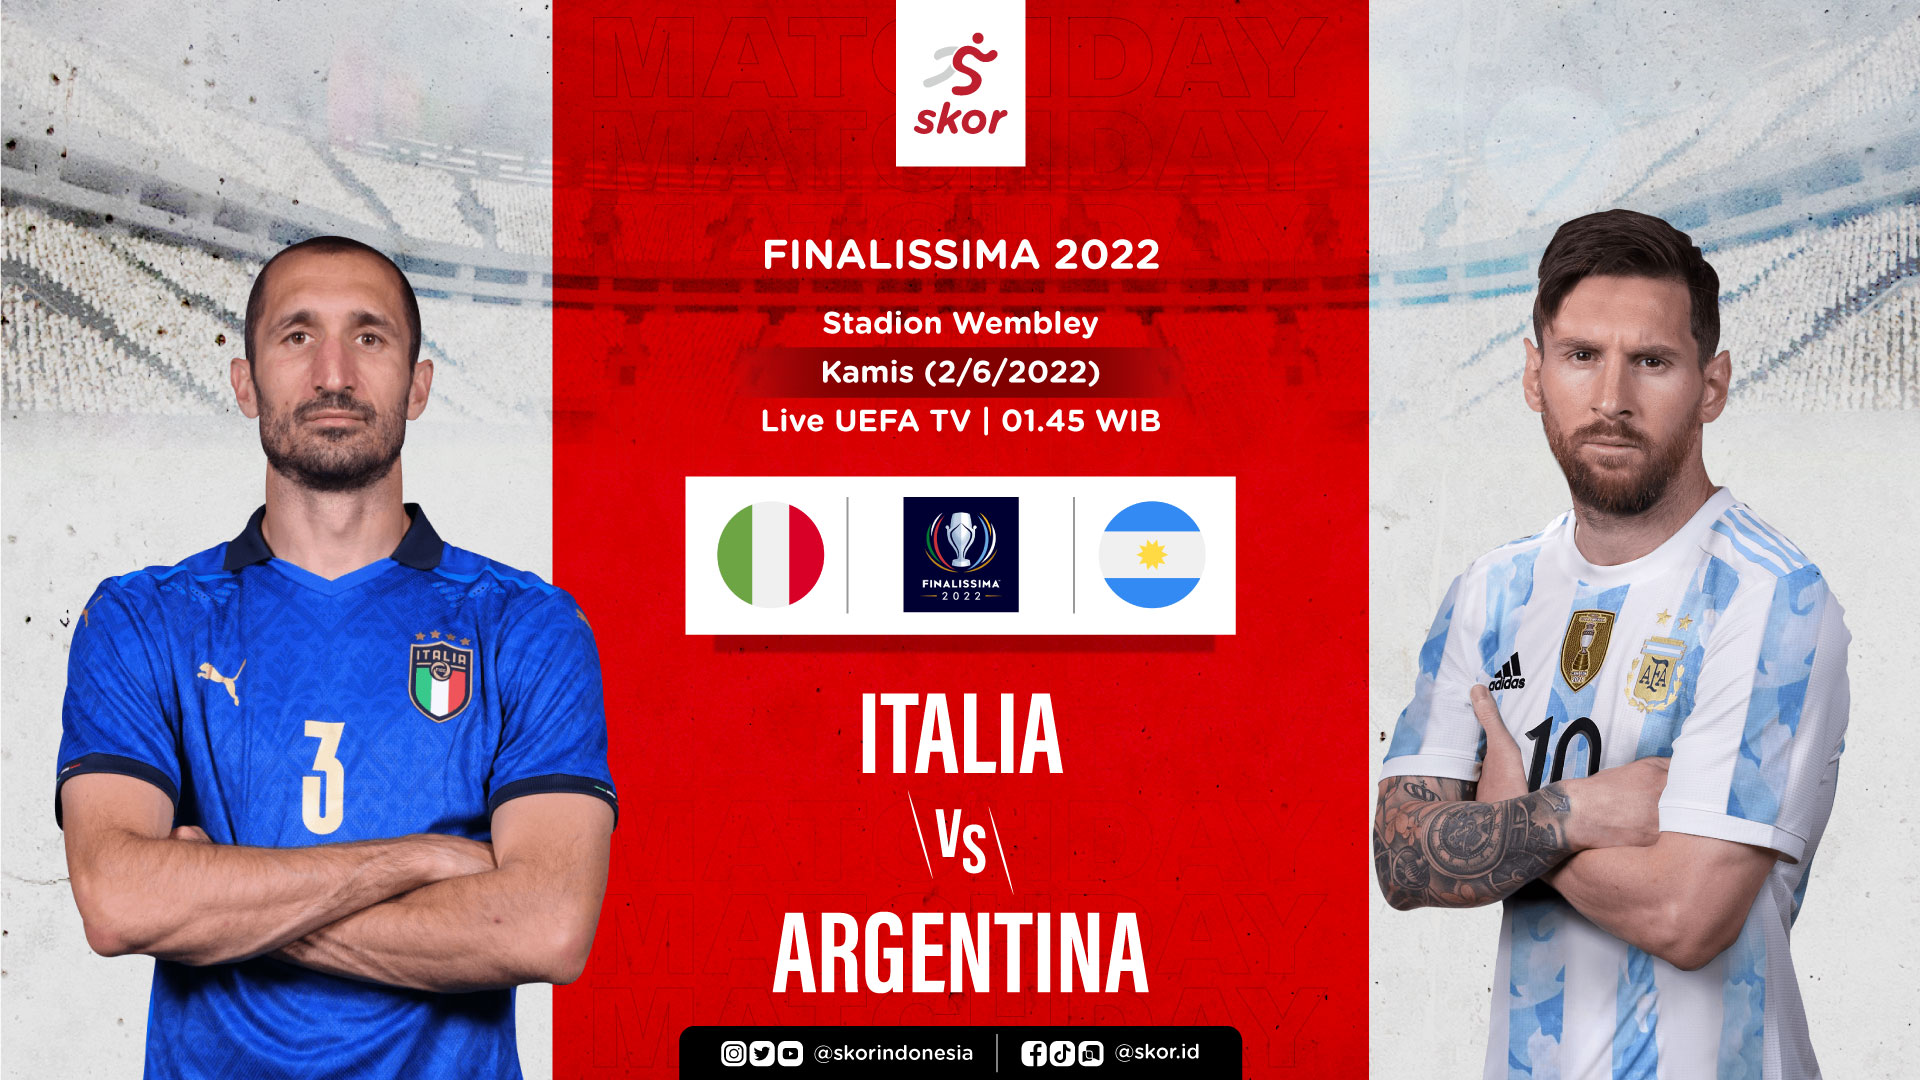 Finalissima 2022 Italia vs Argentina: Prediksi dan Link Live Streaming